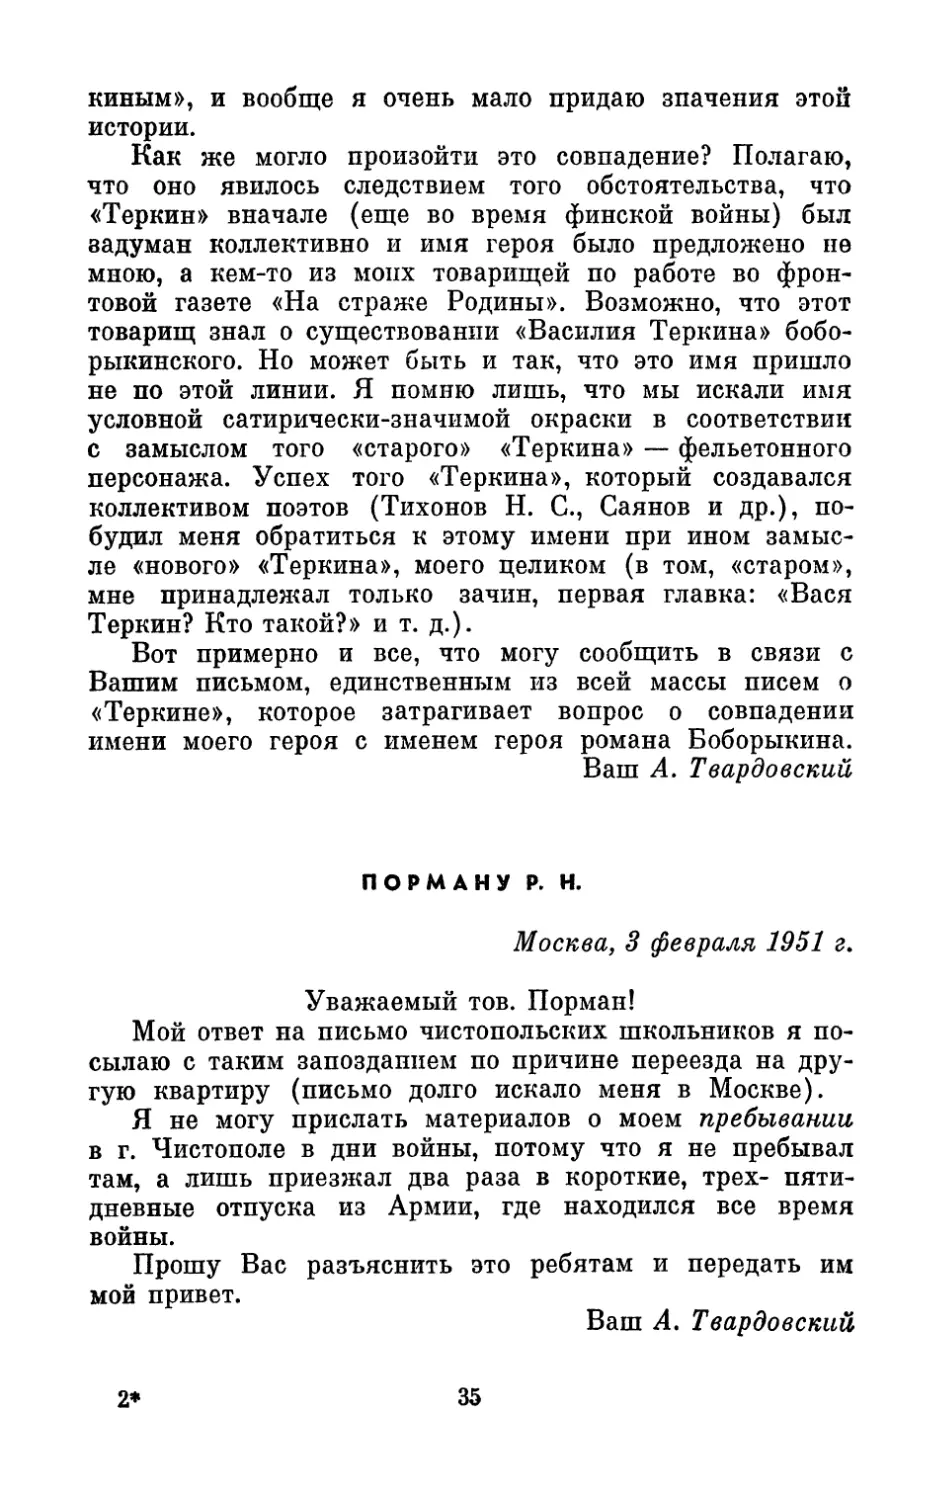 Порману Р. Н., 3 февраля 1951 г.